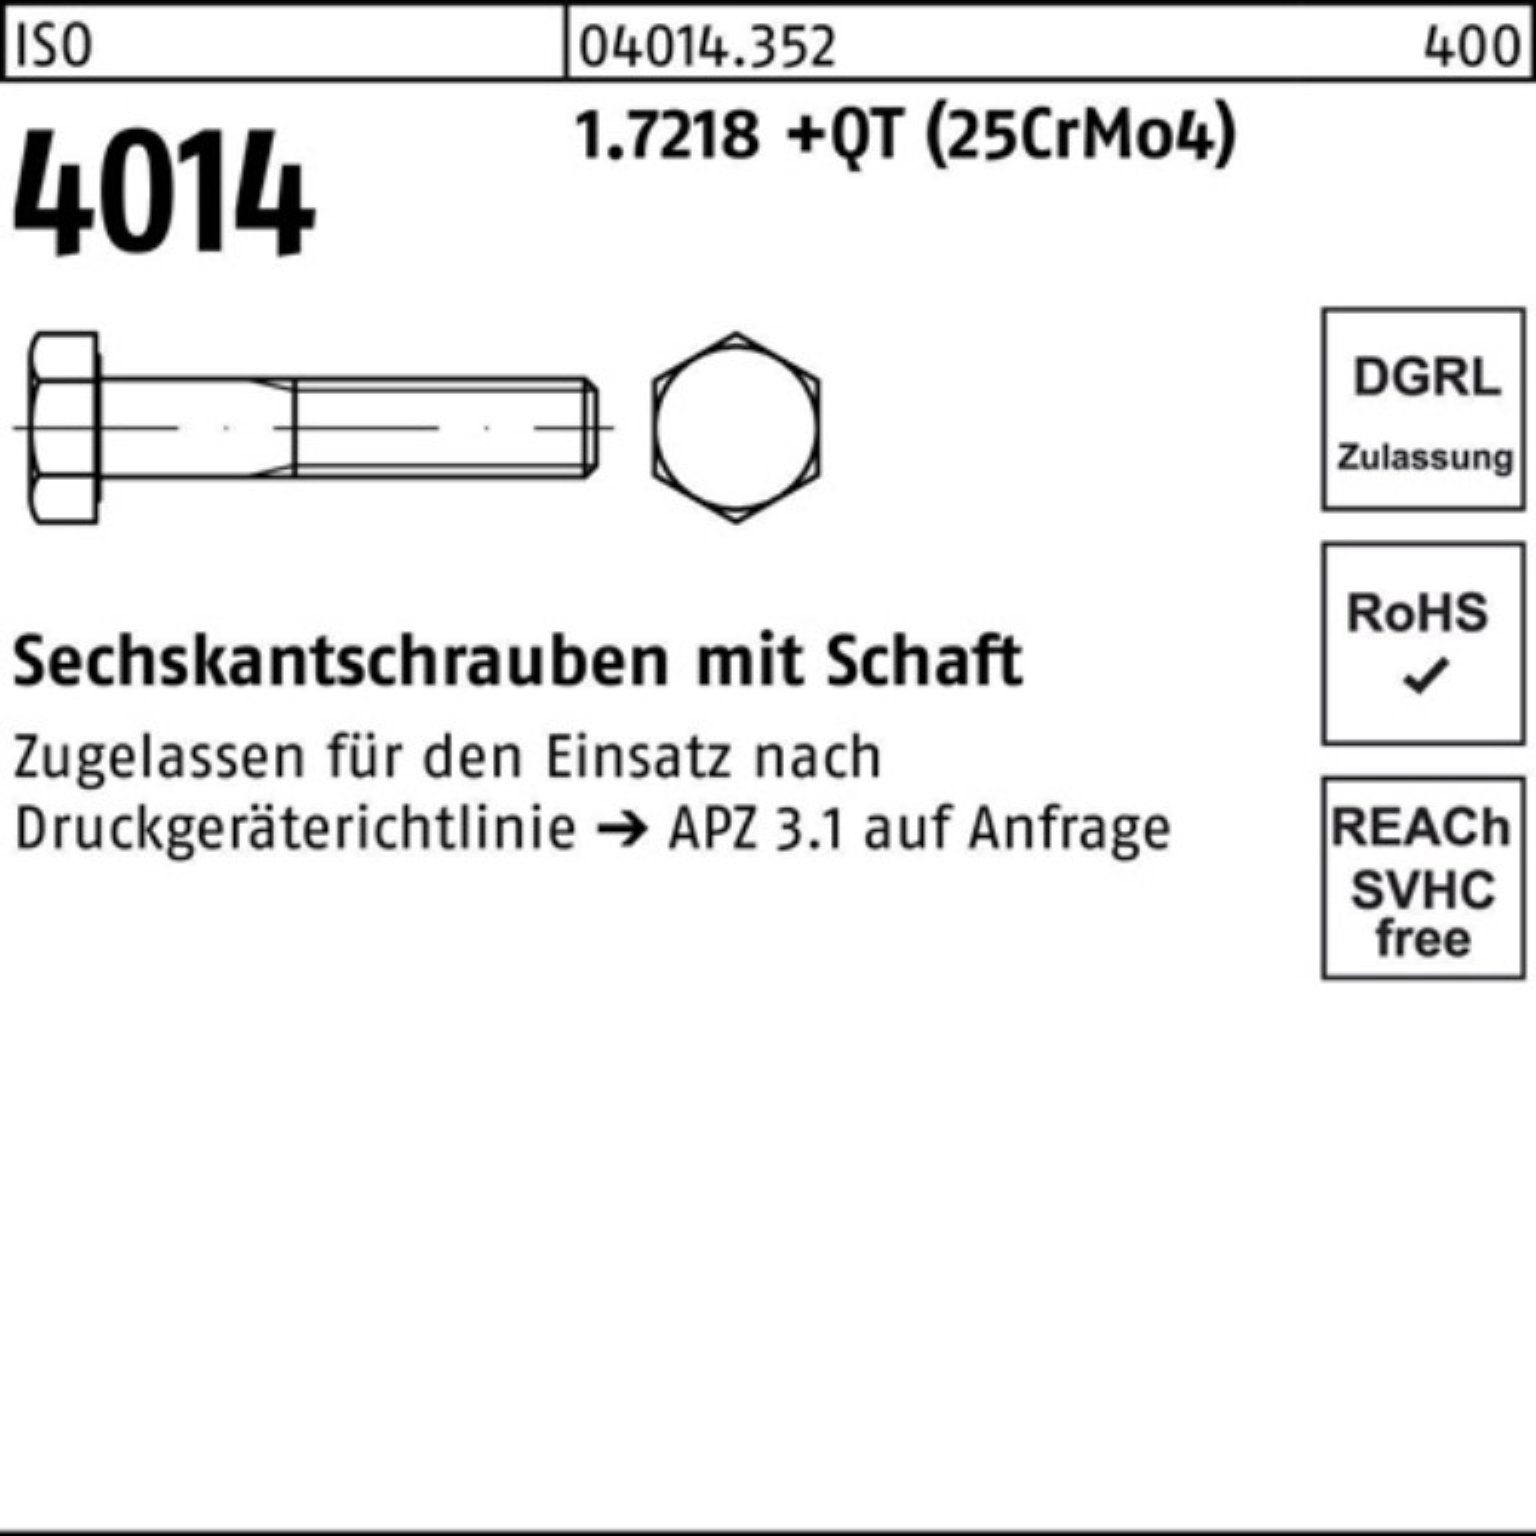 Sechskantschraube 1.7218 Bufab (25Cr ISO +QT 4014 Sechskantschraube Pack M12x Schaft 110 100er